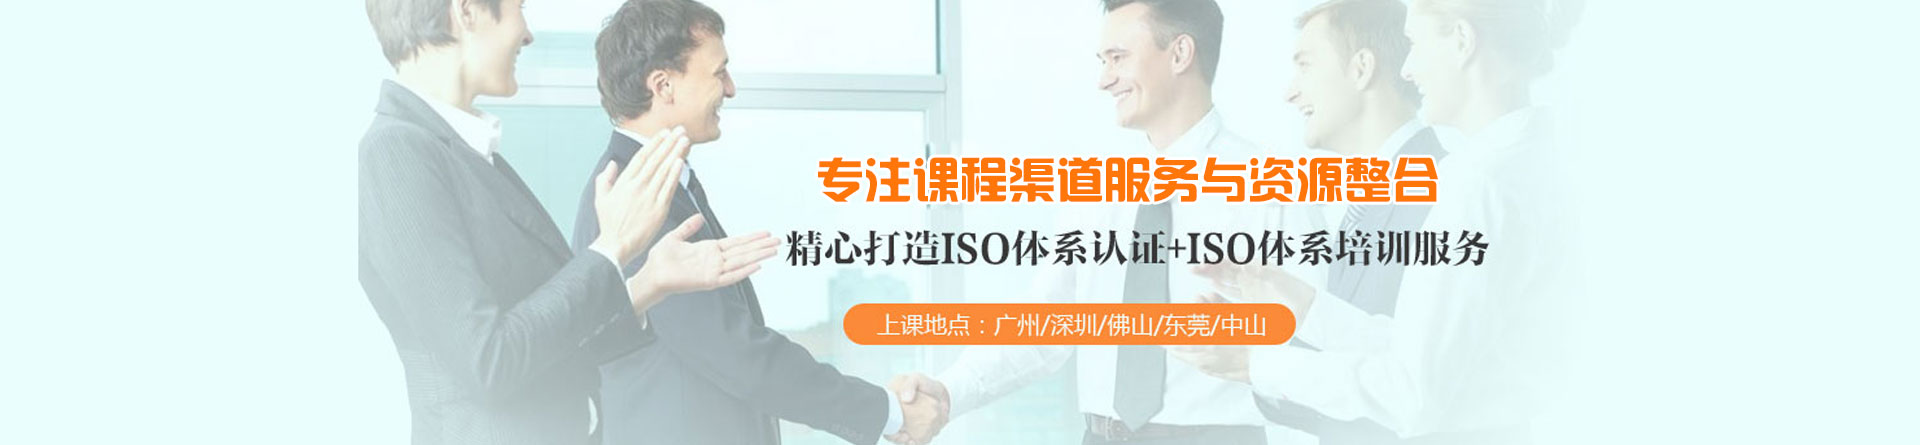 广州方普ISO培训机构